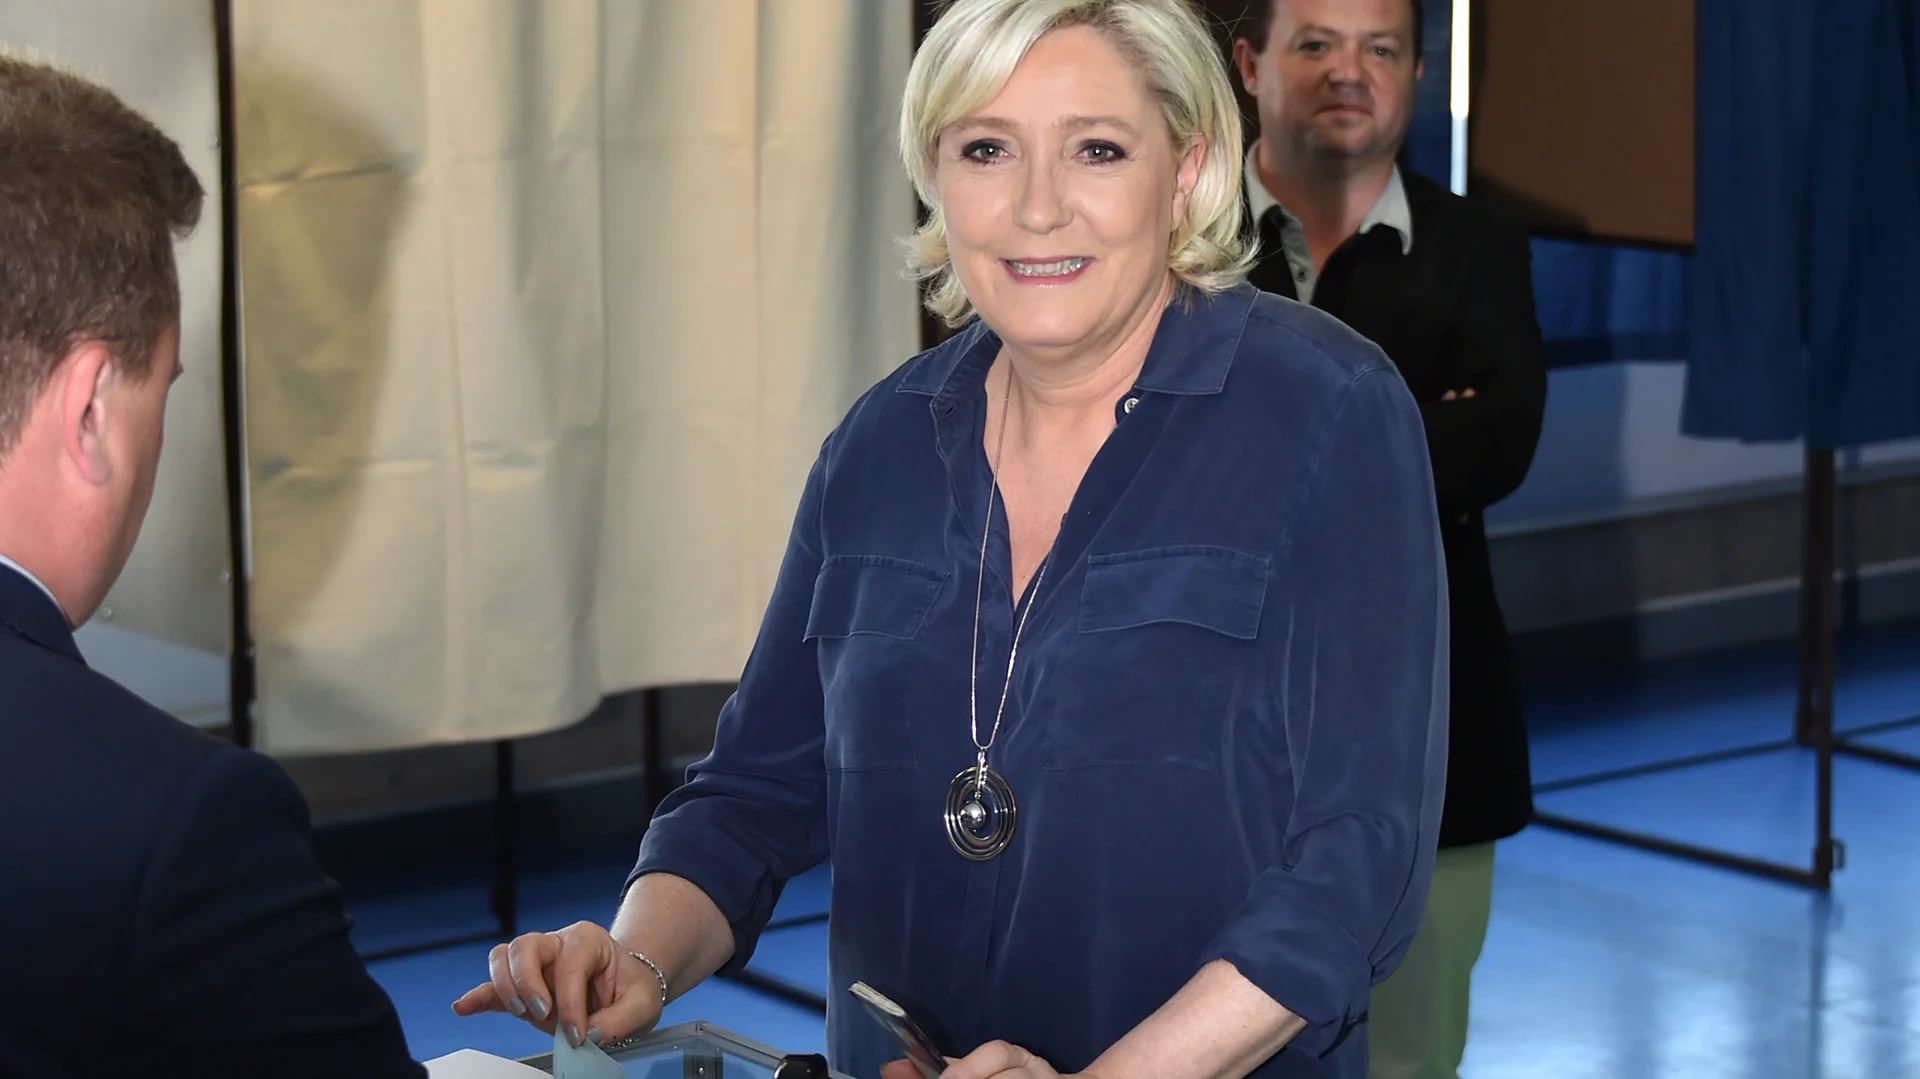 La candidata a presidenta por el Frente Nacional, Marine Le Pen, vota en las elecciones legislativas. Le Pen perdió la elección en segunda vuelta contra Emmanuel Macron (AFP)